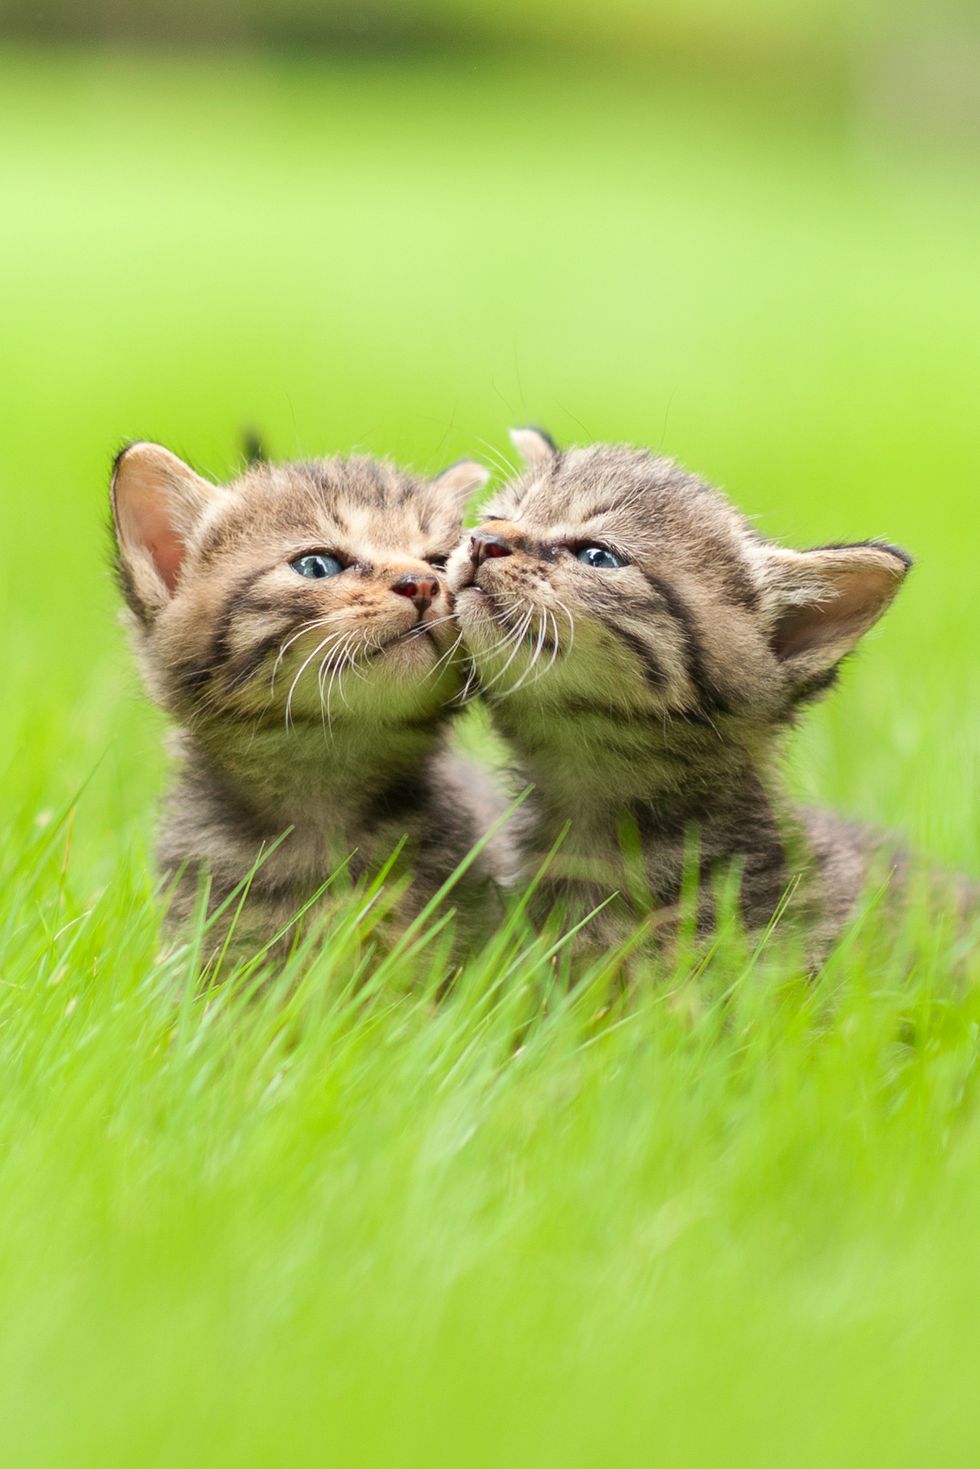 cute baby animals kittens